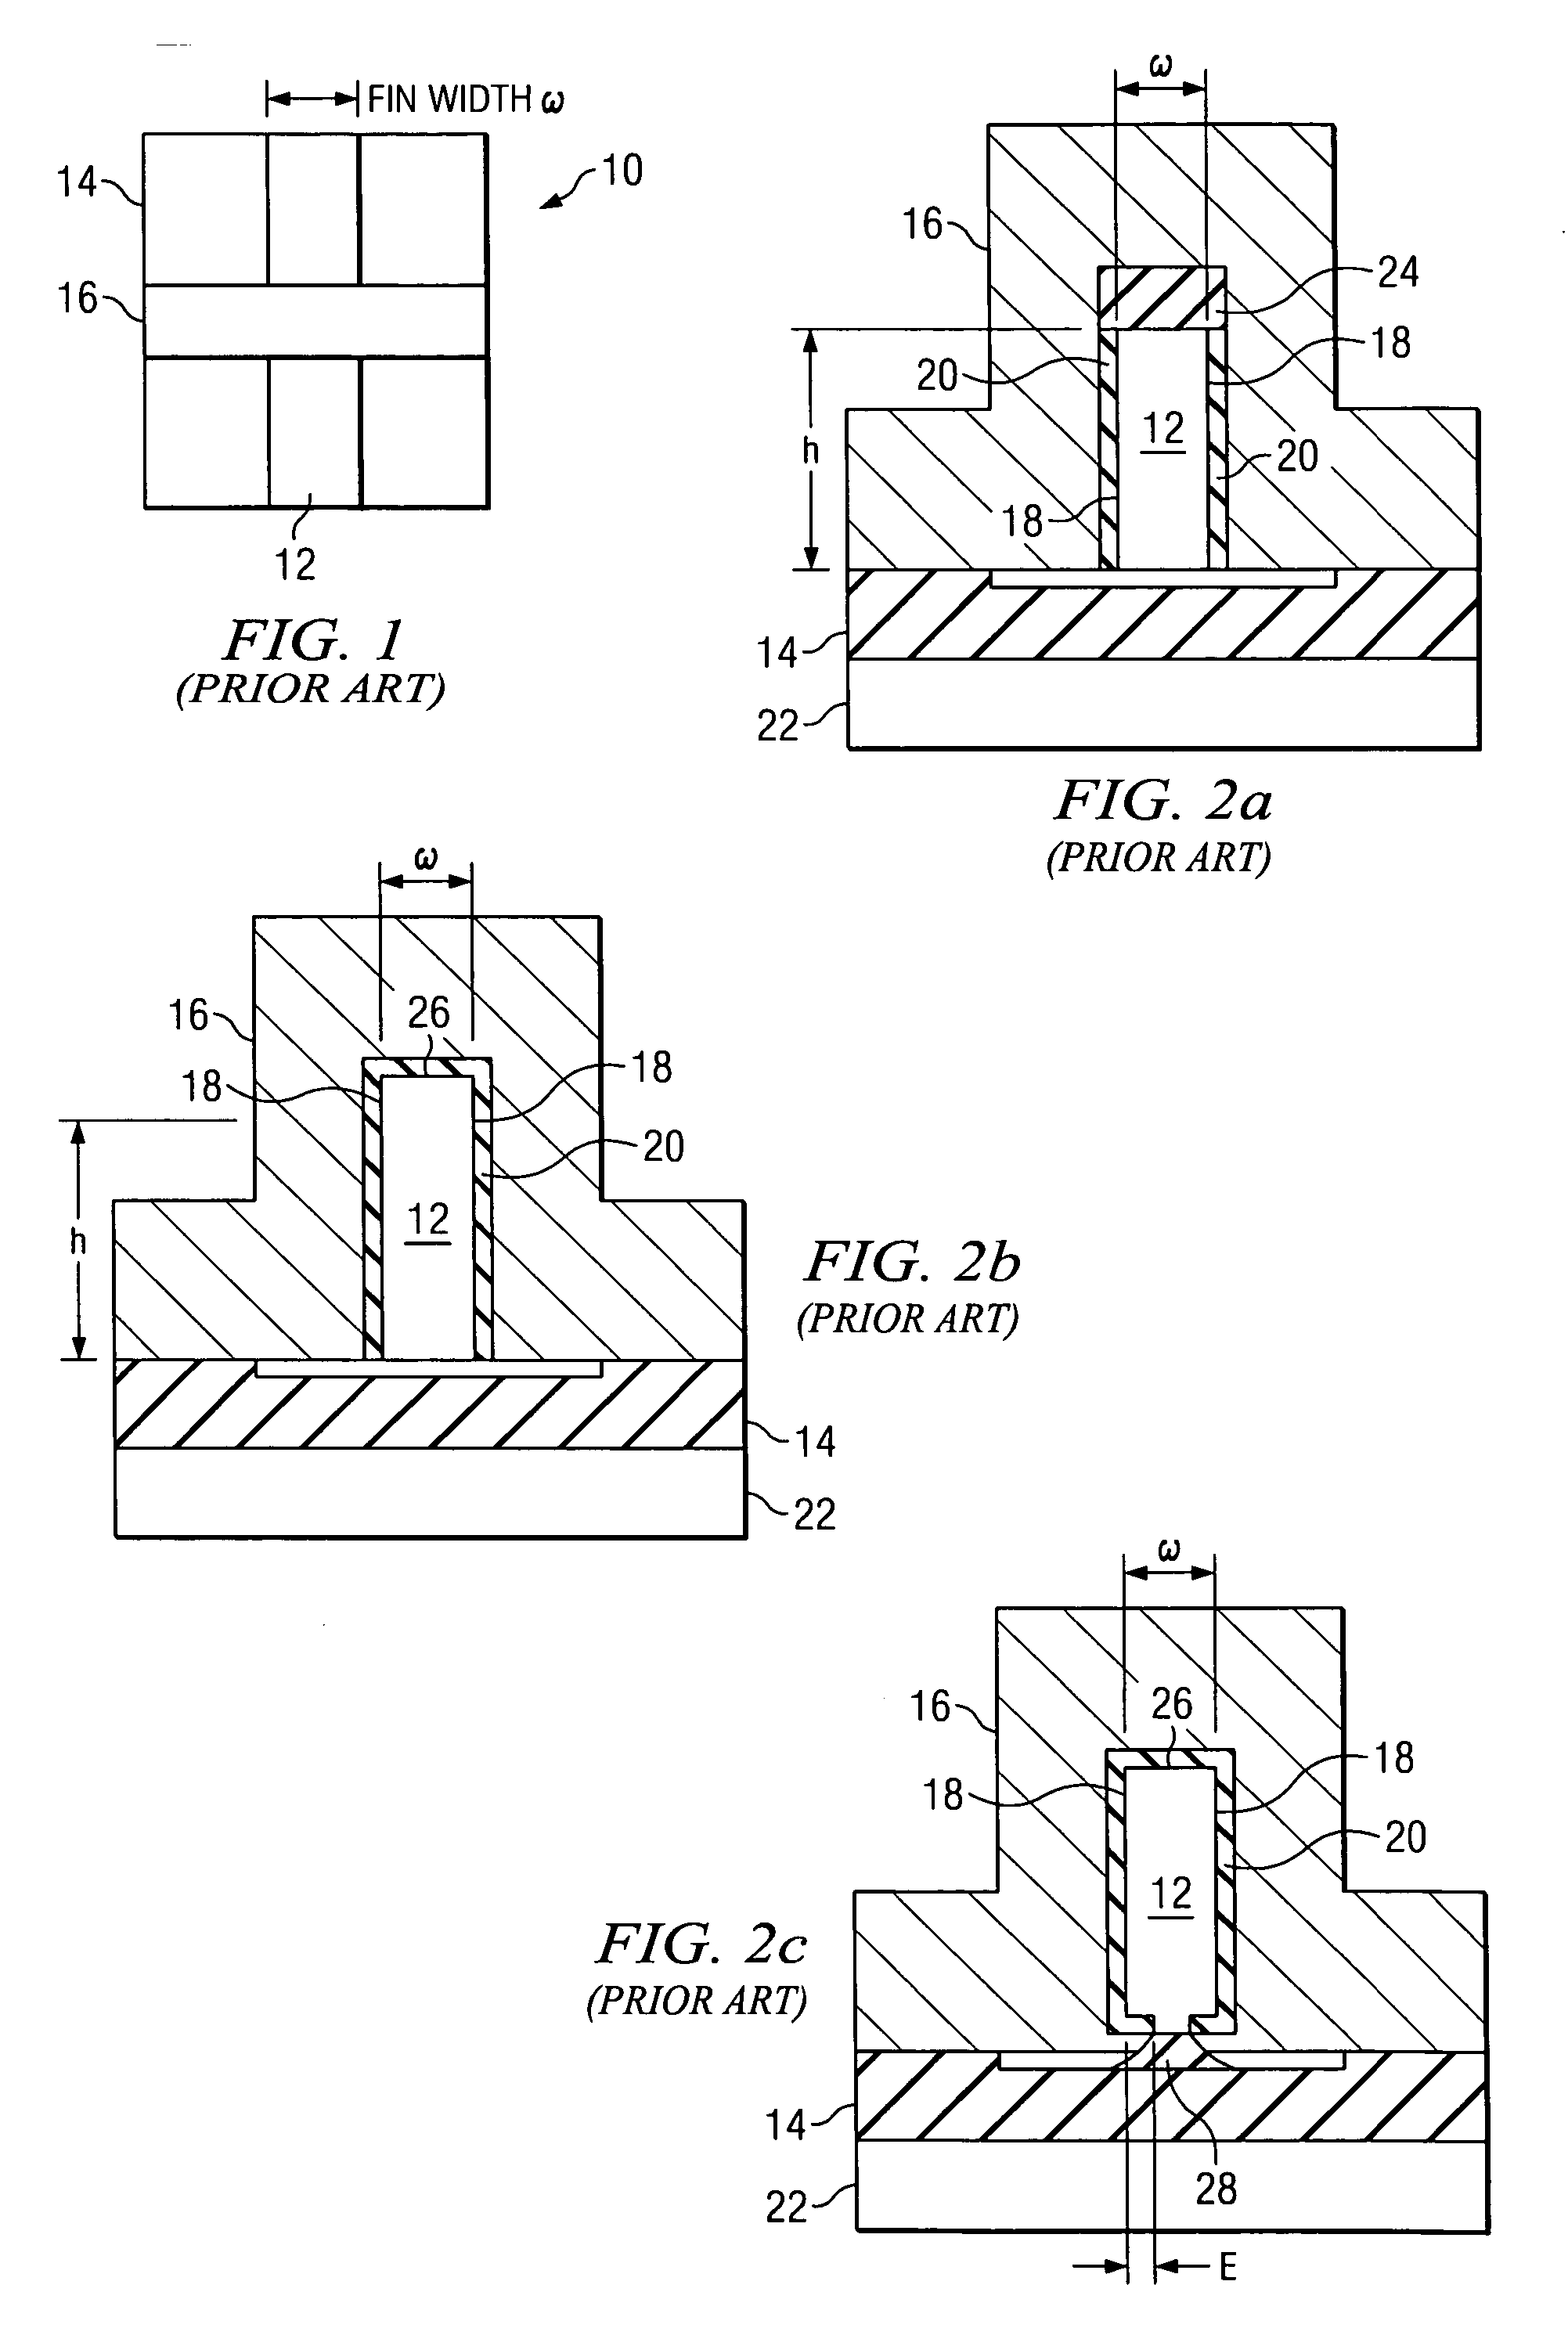 Multiple-gate transistors formed on bulk substrates